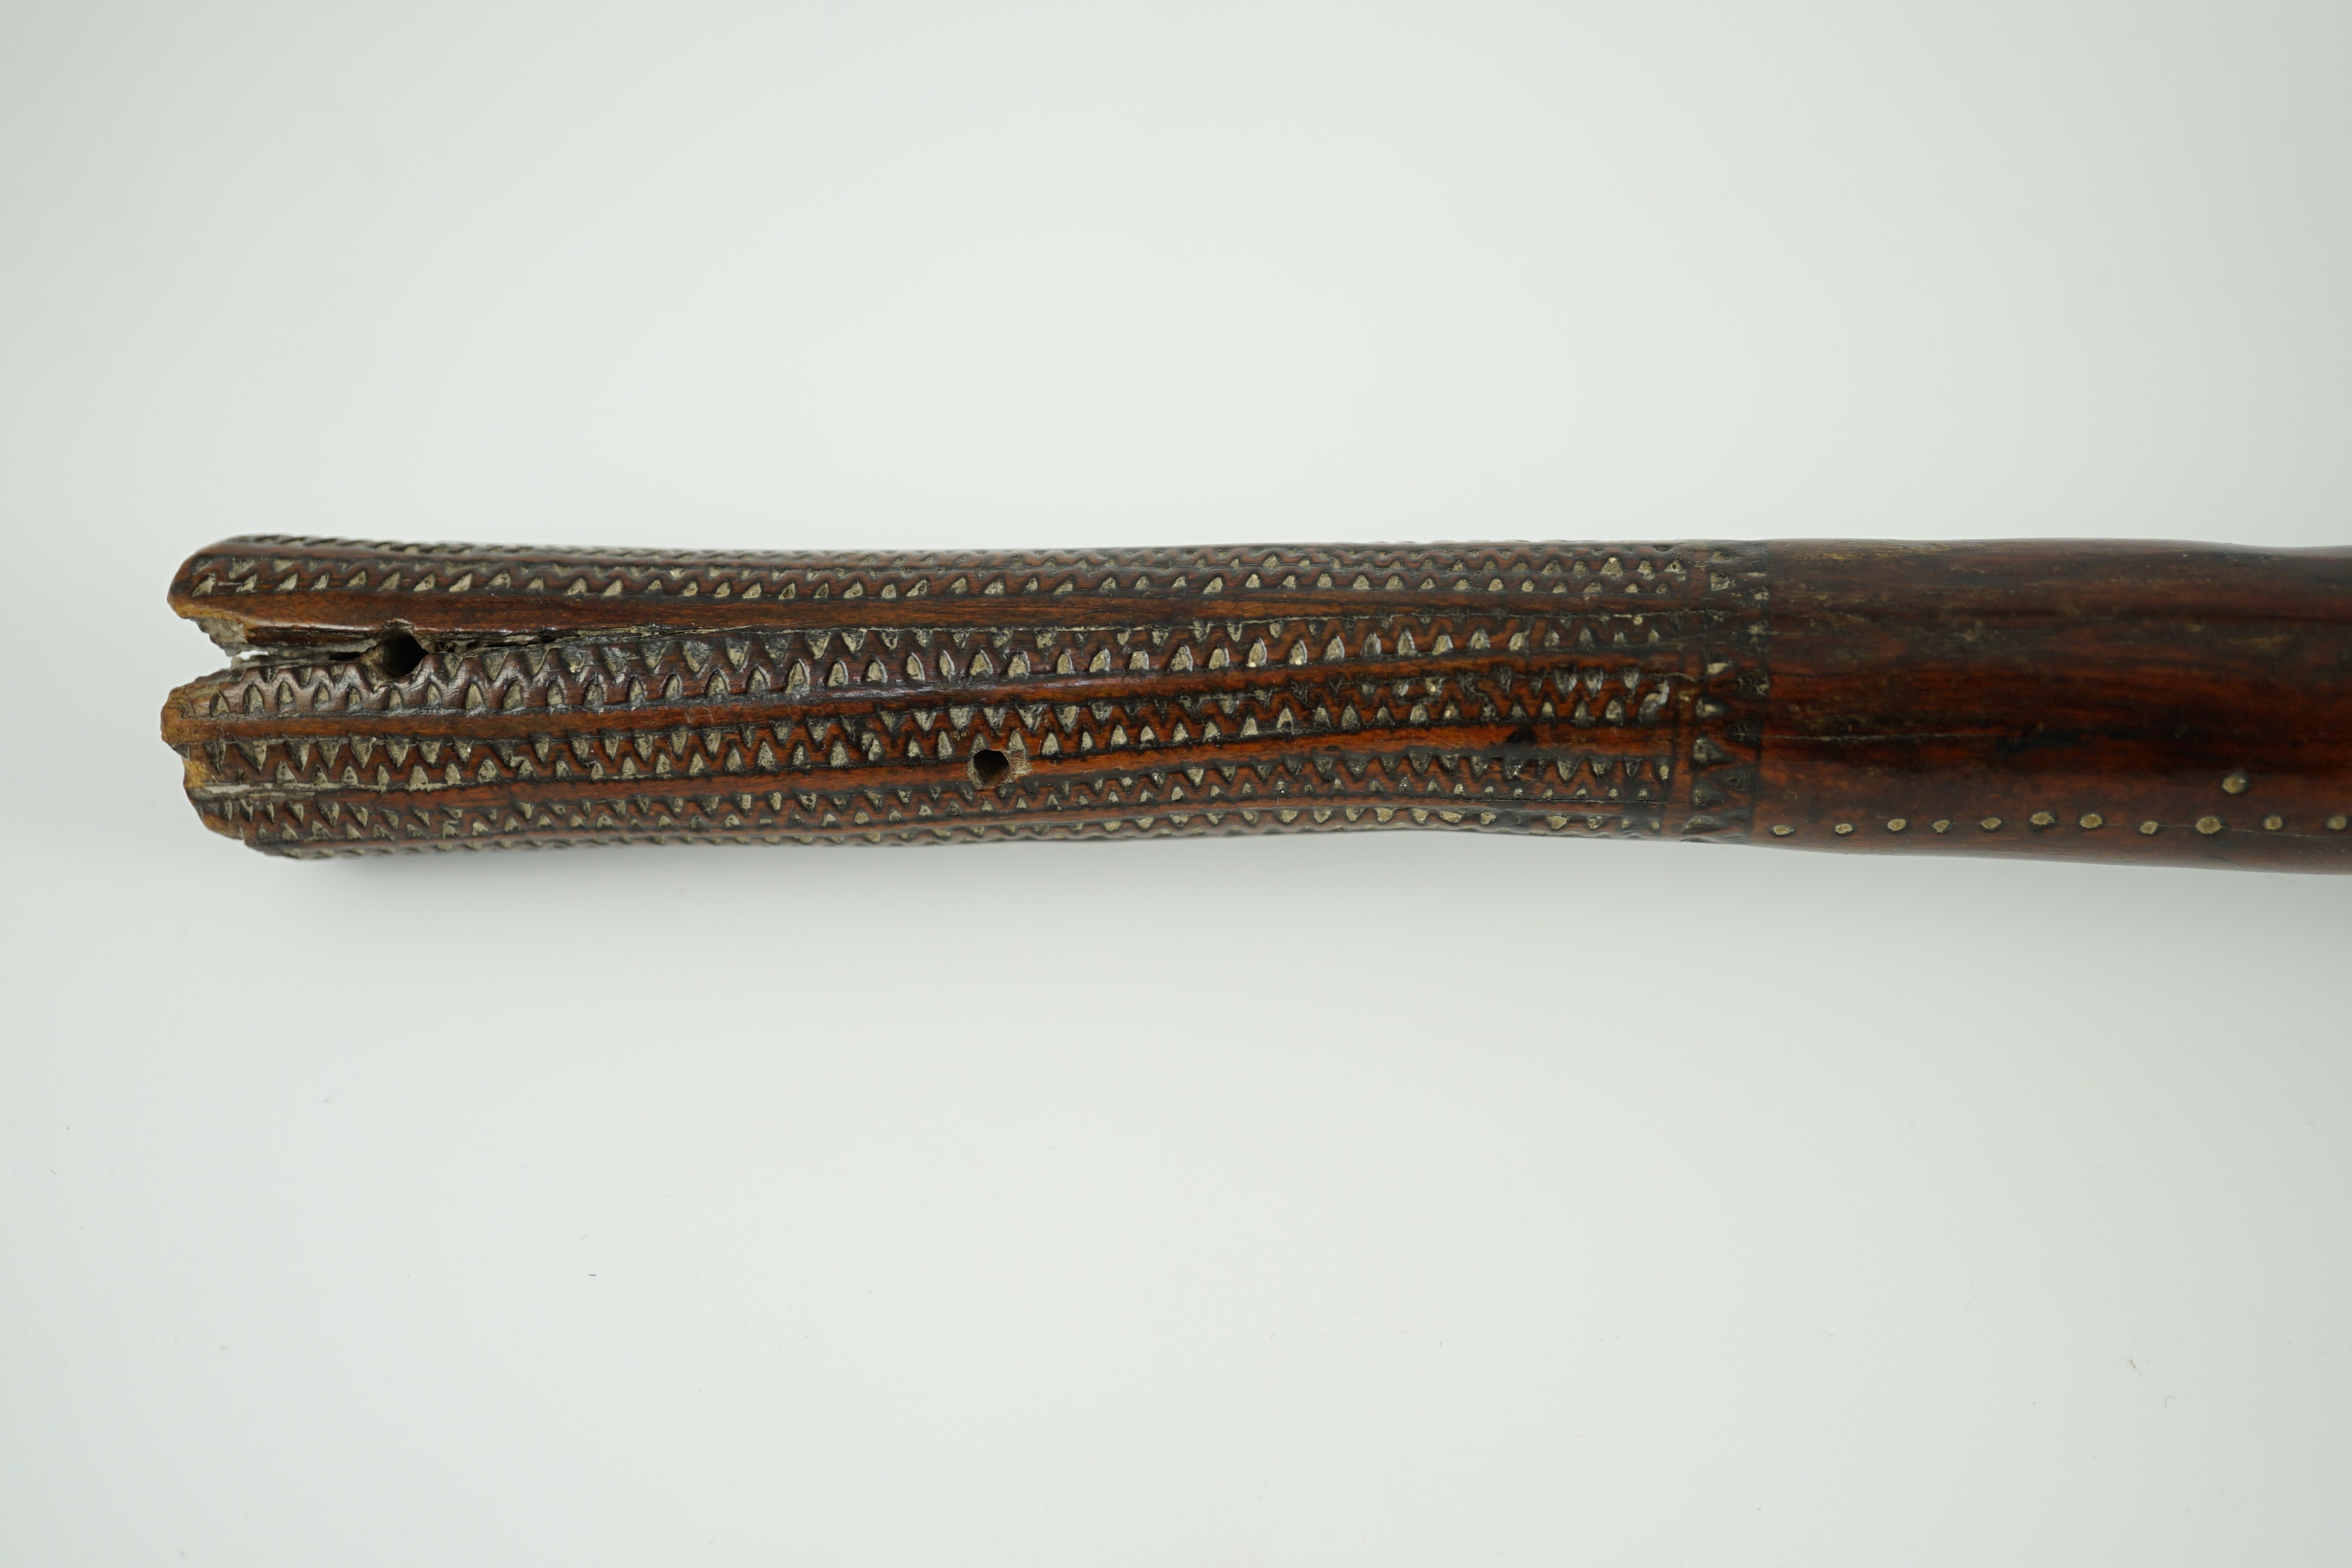 A Fijian hardwood throwing club, 40cm long